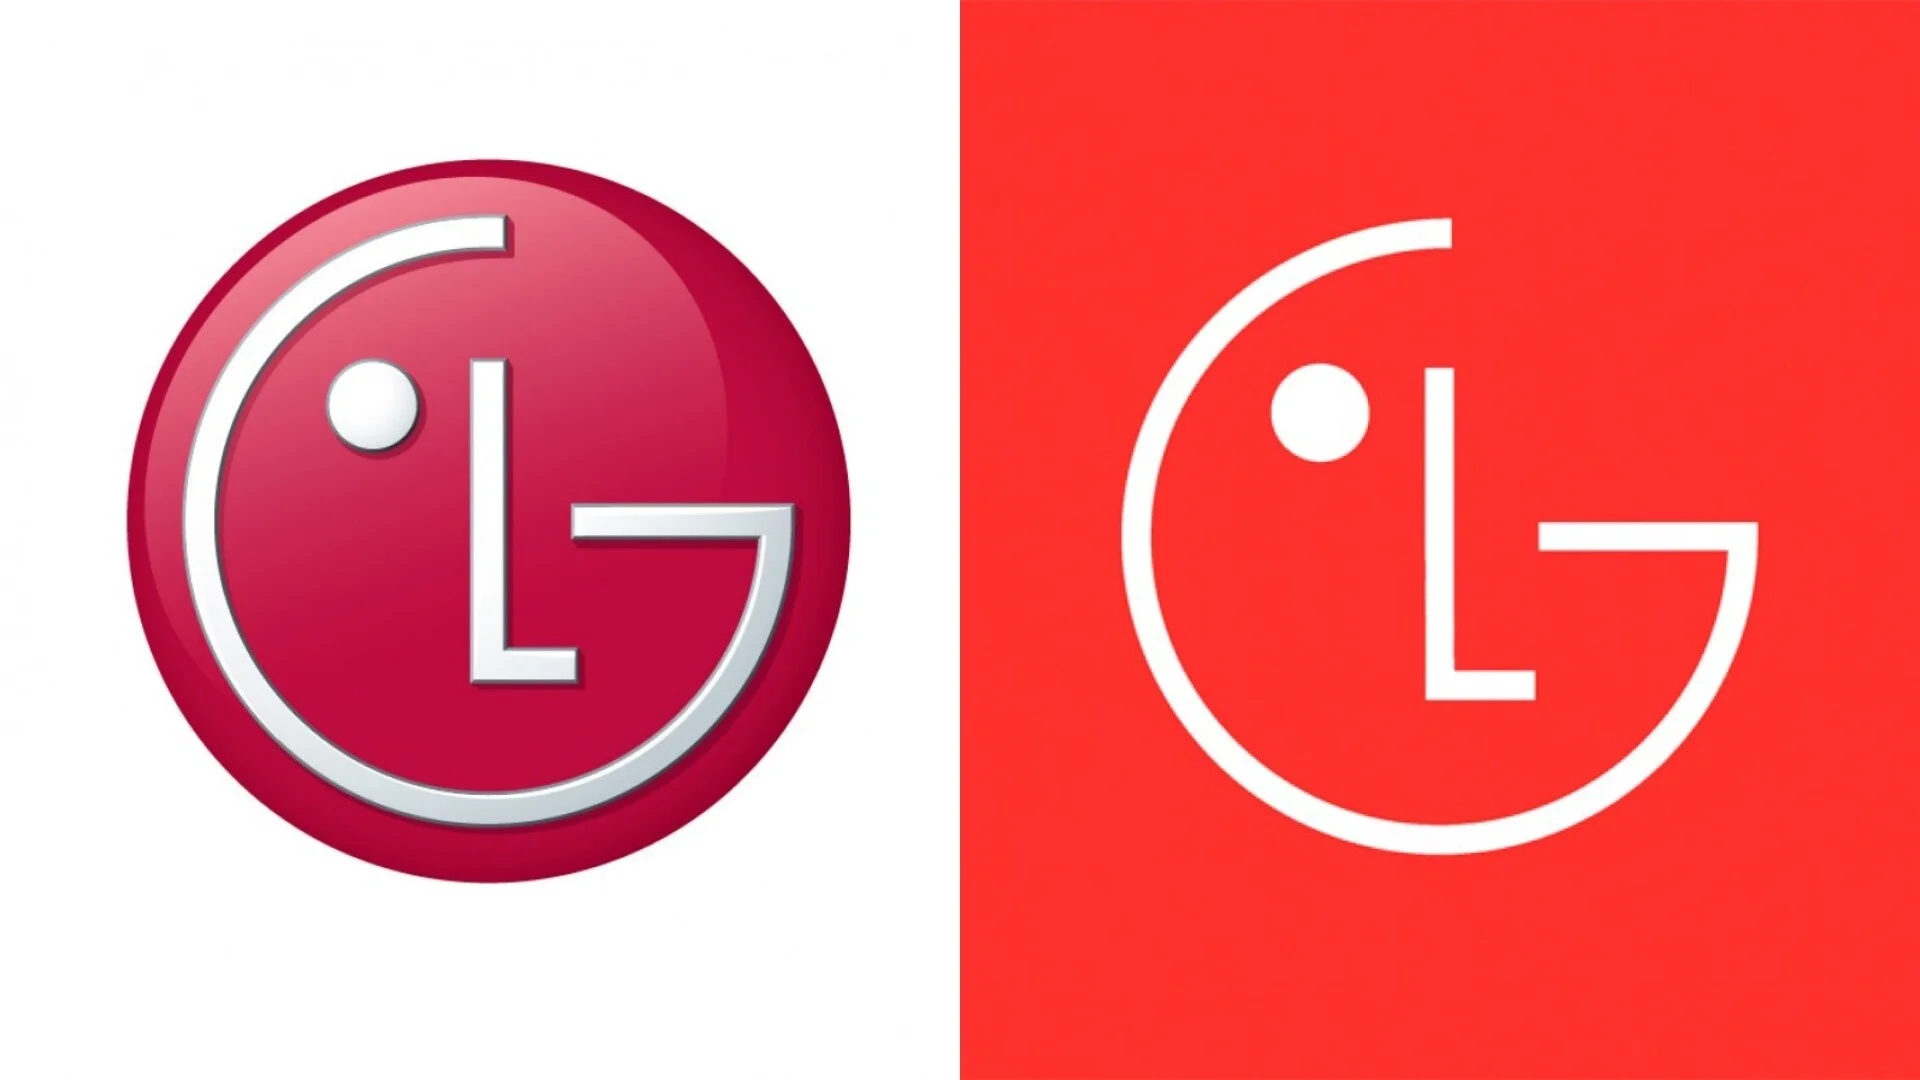 LG впервые за долгое время обновила логотип - фото 1